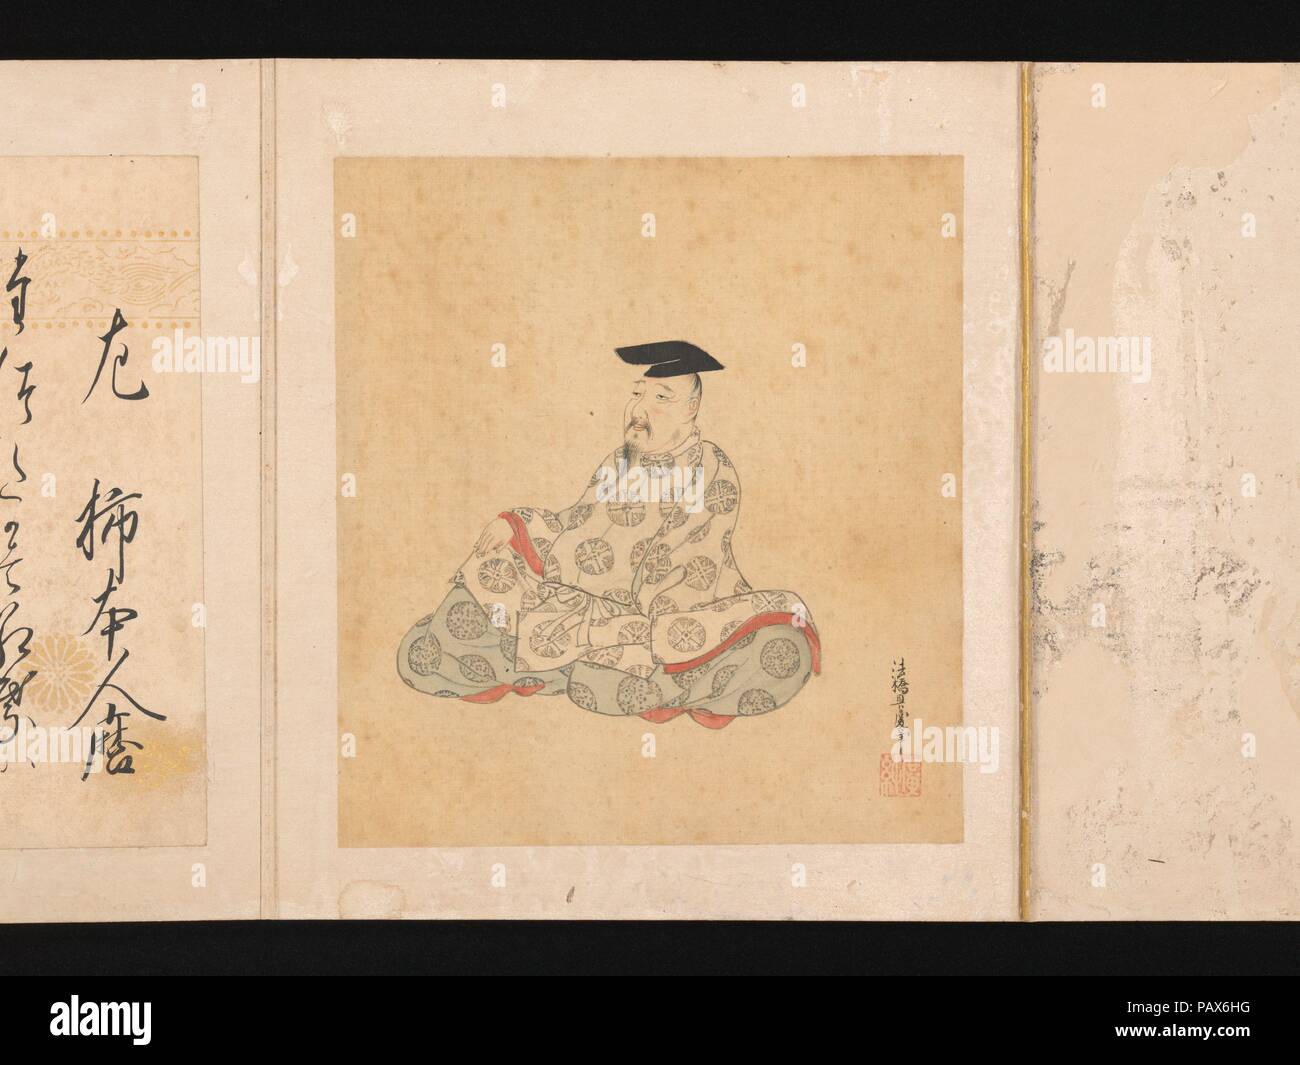 Des portraits et des poèmes de la trente-six grands poètes poétique (Sanjurokkasen). Sumiyoshi Gukei (artiste : japonais, 1631-1705). Culture : le Japon. Dimensions : Image (chaque feuille) : 6 7/8 × 6 5/16 in. (17,4 × 16 cm) Album : 8 3/4 × 7 × 11/16 2 5/8 in. (22,3 × 19,5 × 6,7 cm). Date : 1674-92. Cet album contient les portraits imaginaires de trente-six des maîtres vénérés de la poésie de la Nara (710-794) et Heian (794-1185) périodes, chacune accompagnée d'un de ses versets de la présente page. Sélections des plus grands poètes ont été faites par les connaisseurs de la fin de la période Heian, avec Kakinomoto no Hitomaro (acti Banque D'Images